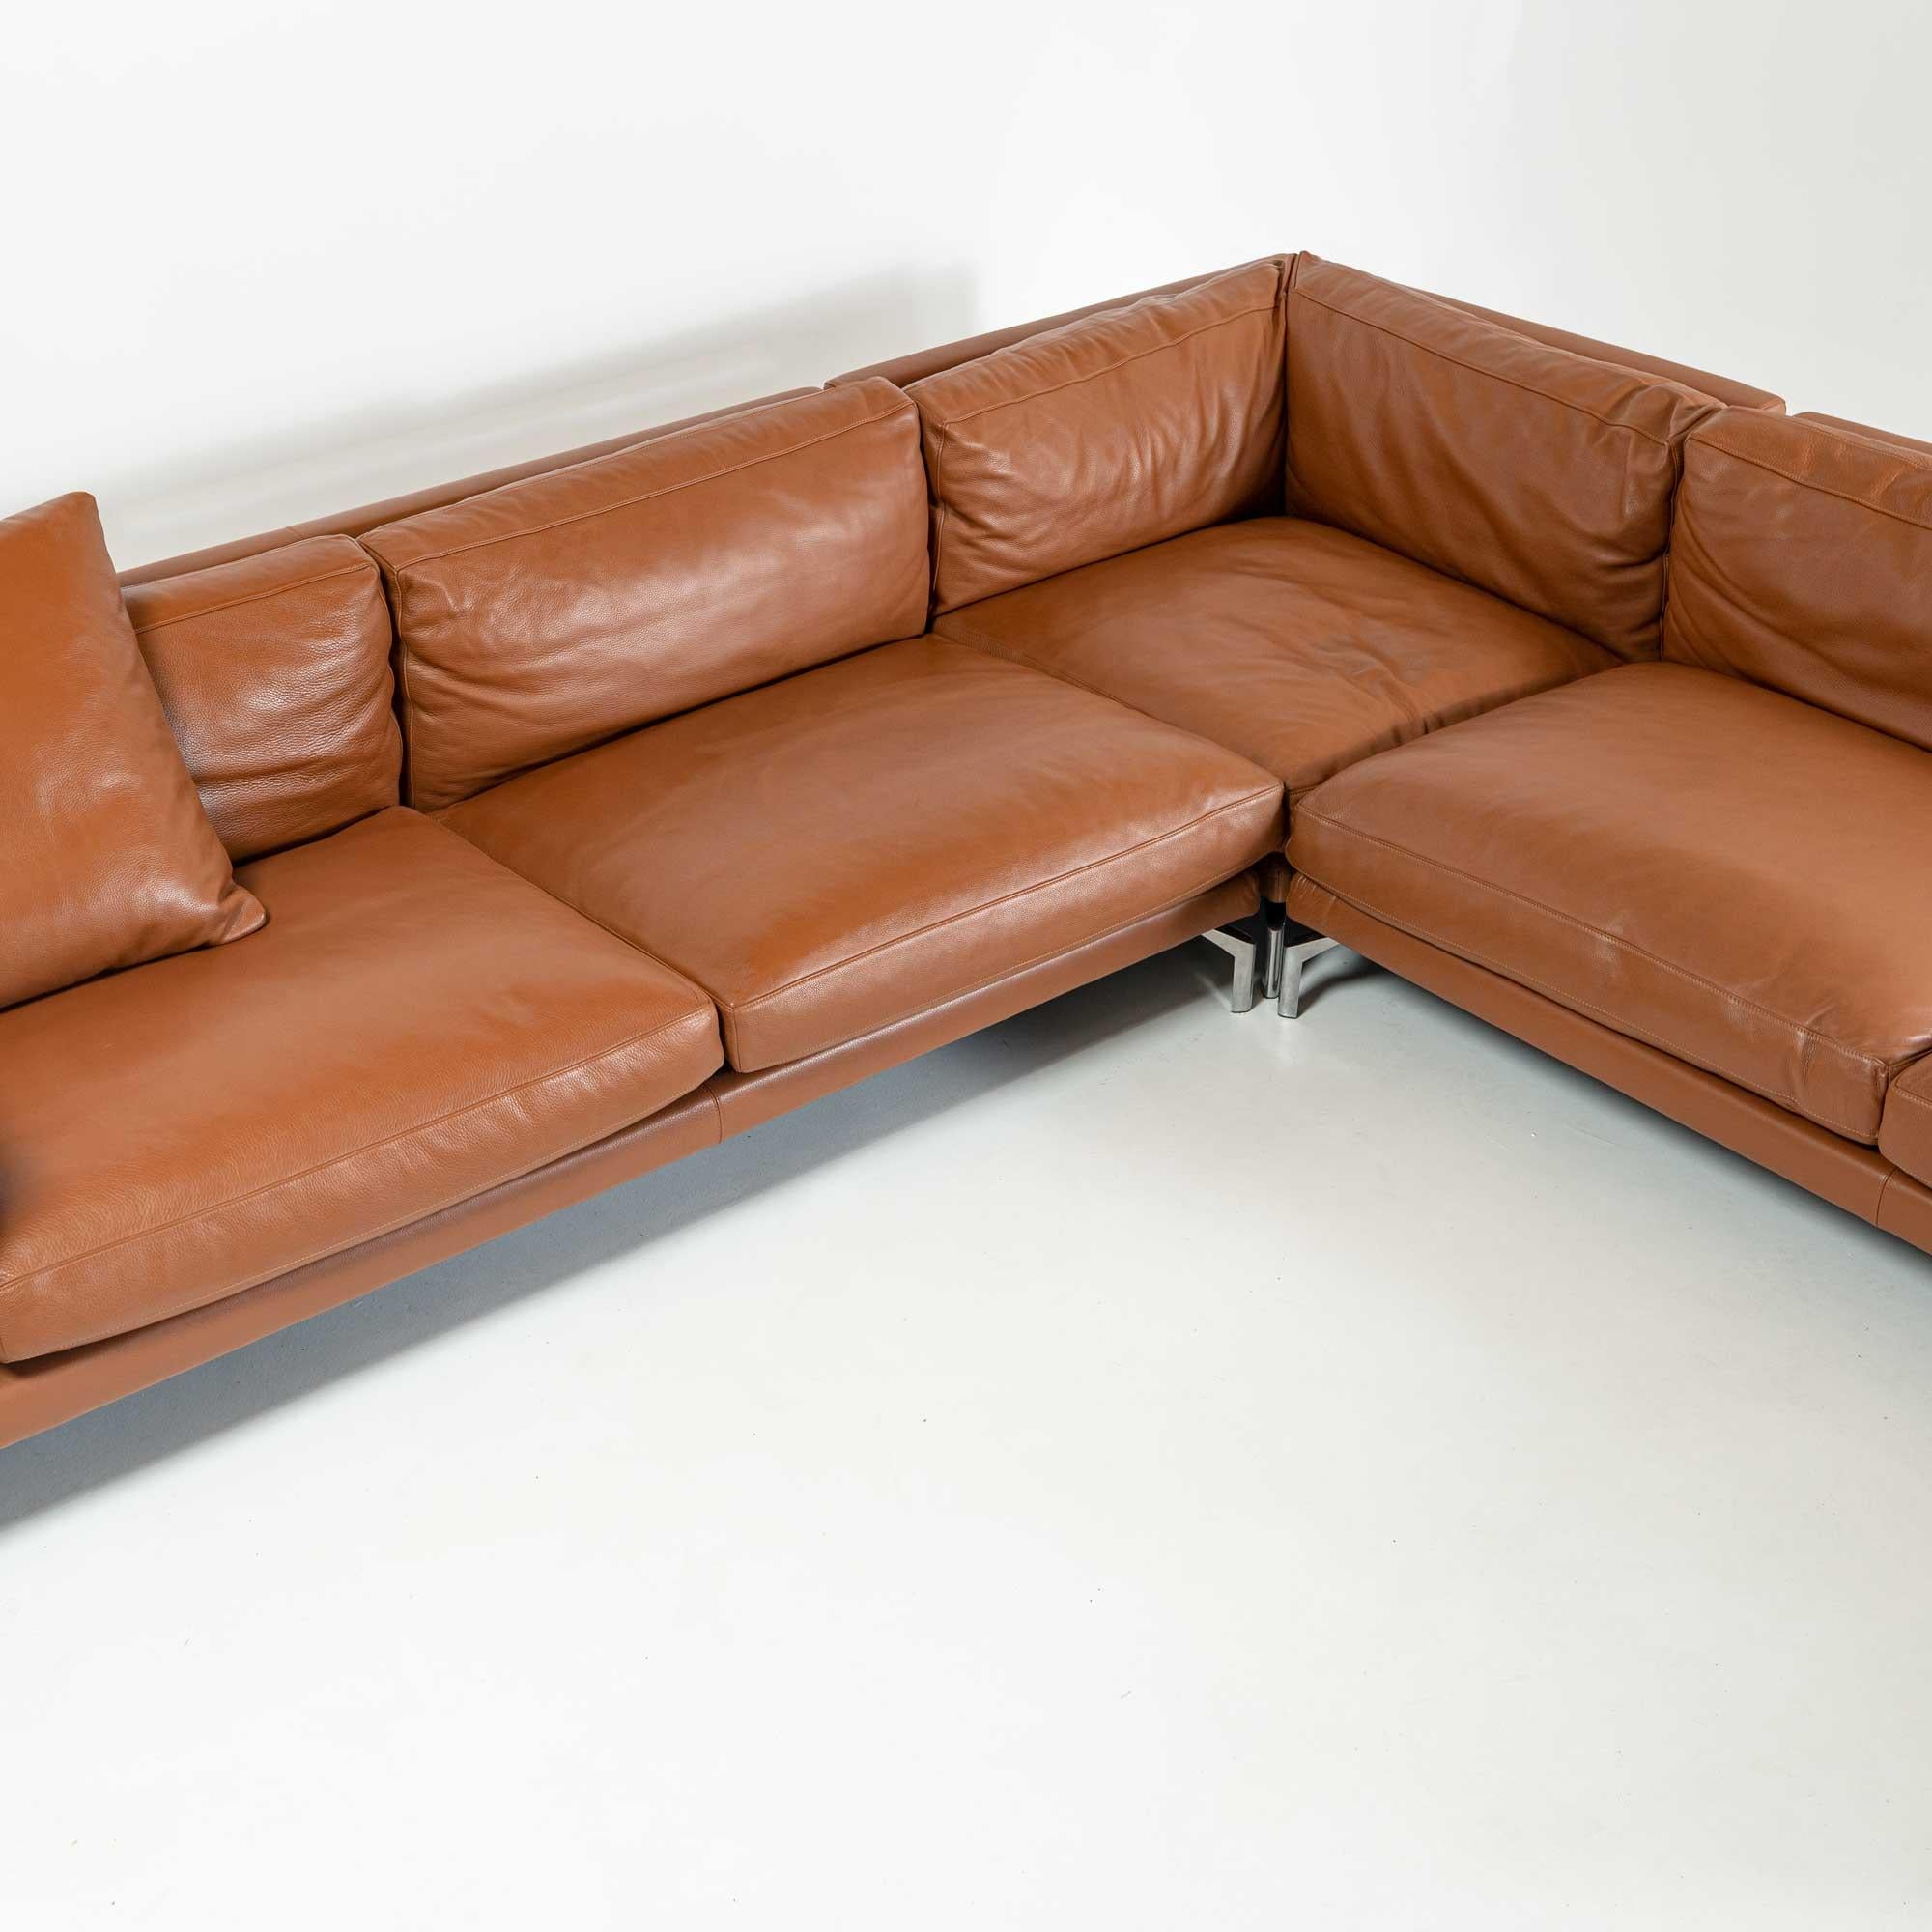 Contemporary Como Corner Sectional Sofa, Designed by Giorgio Soressi for DWR, Canyon Leather